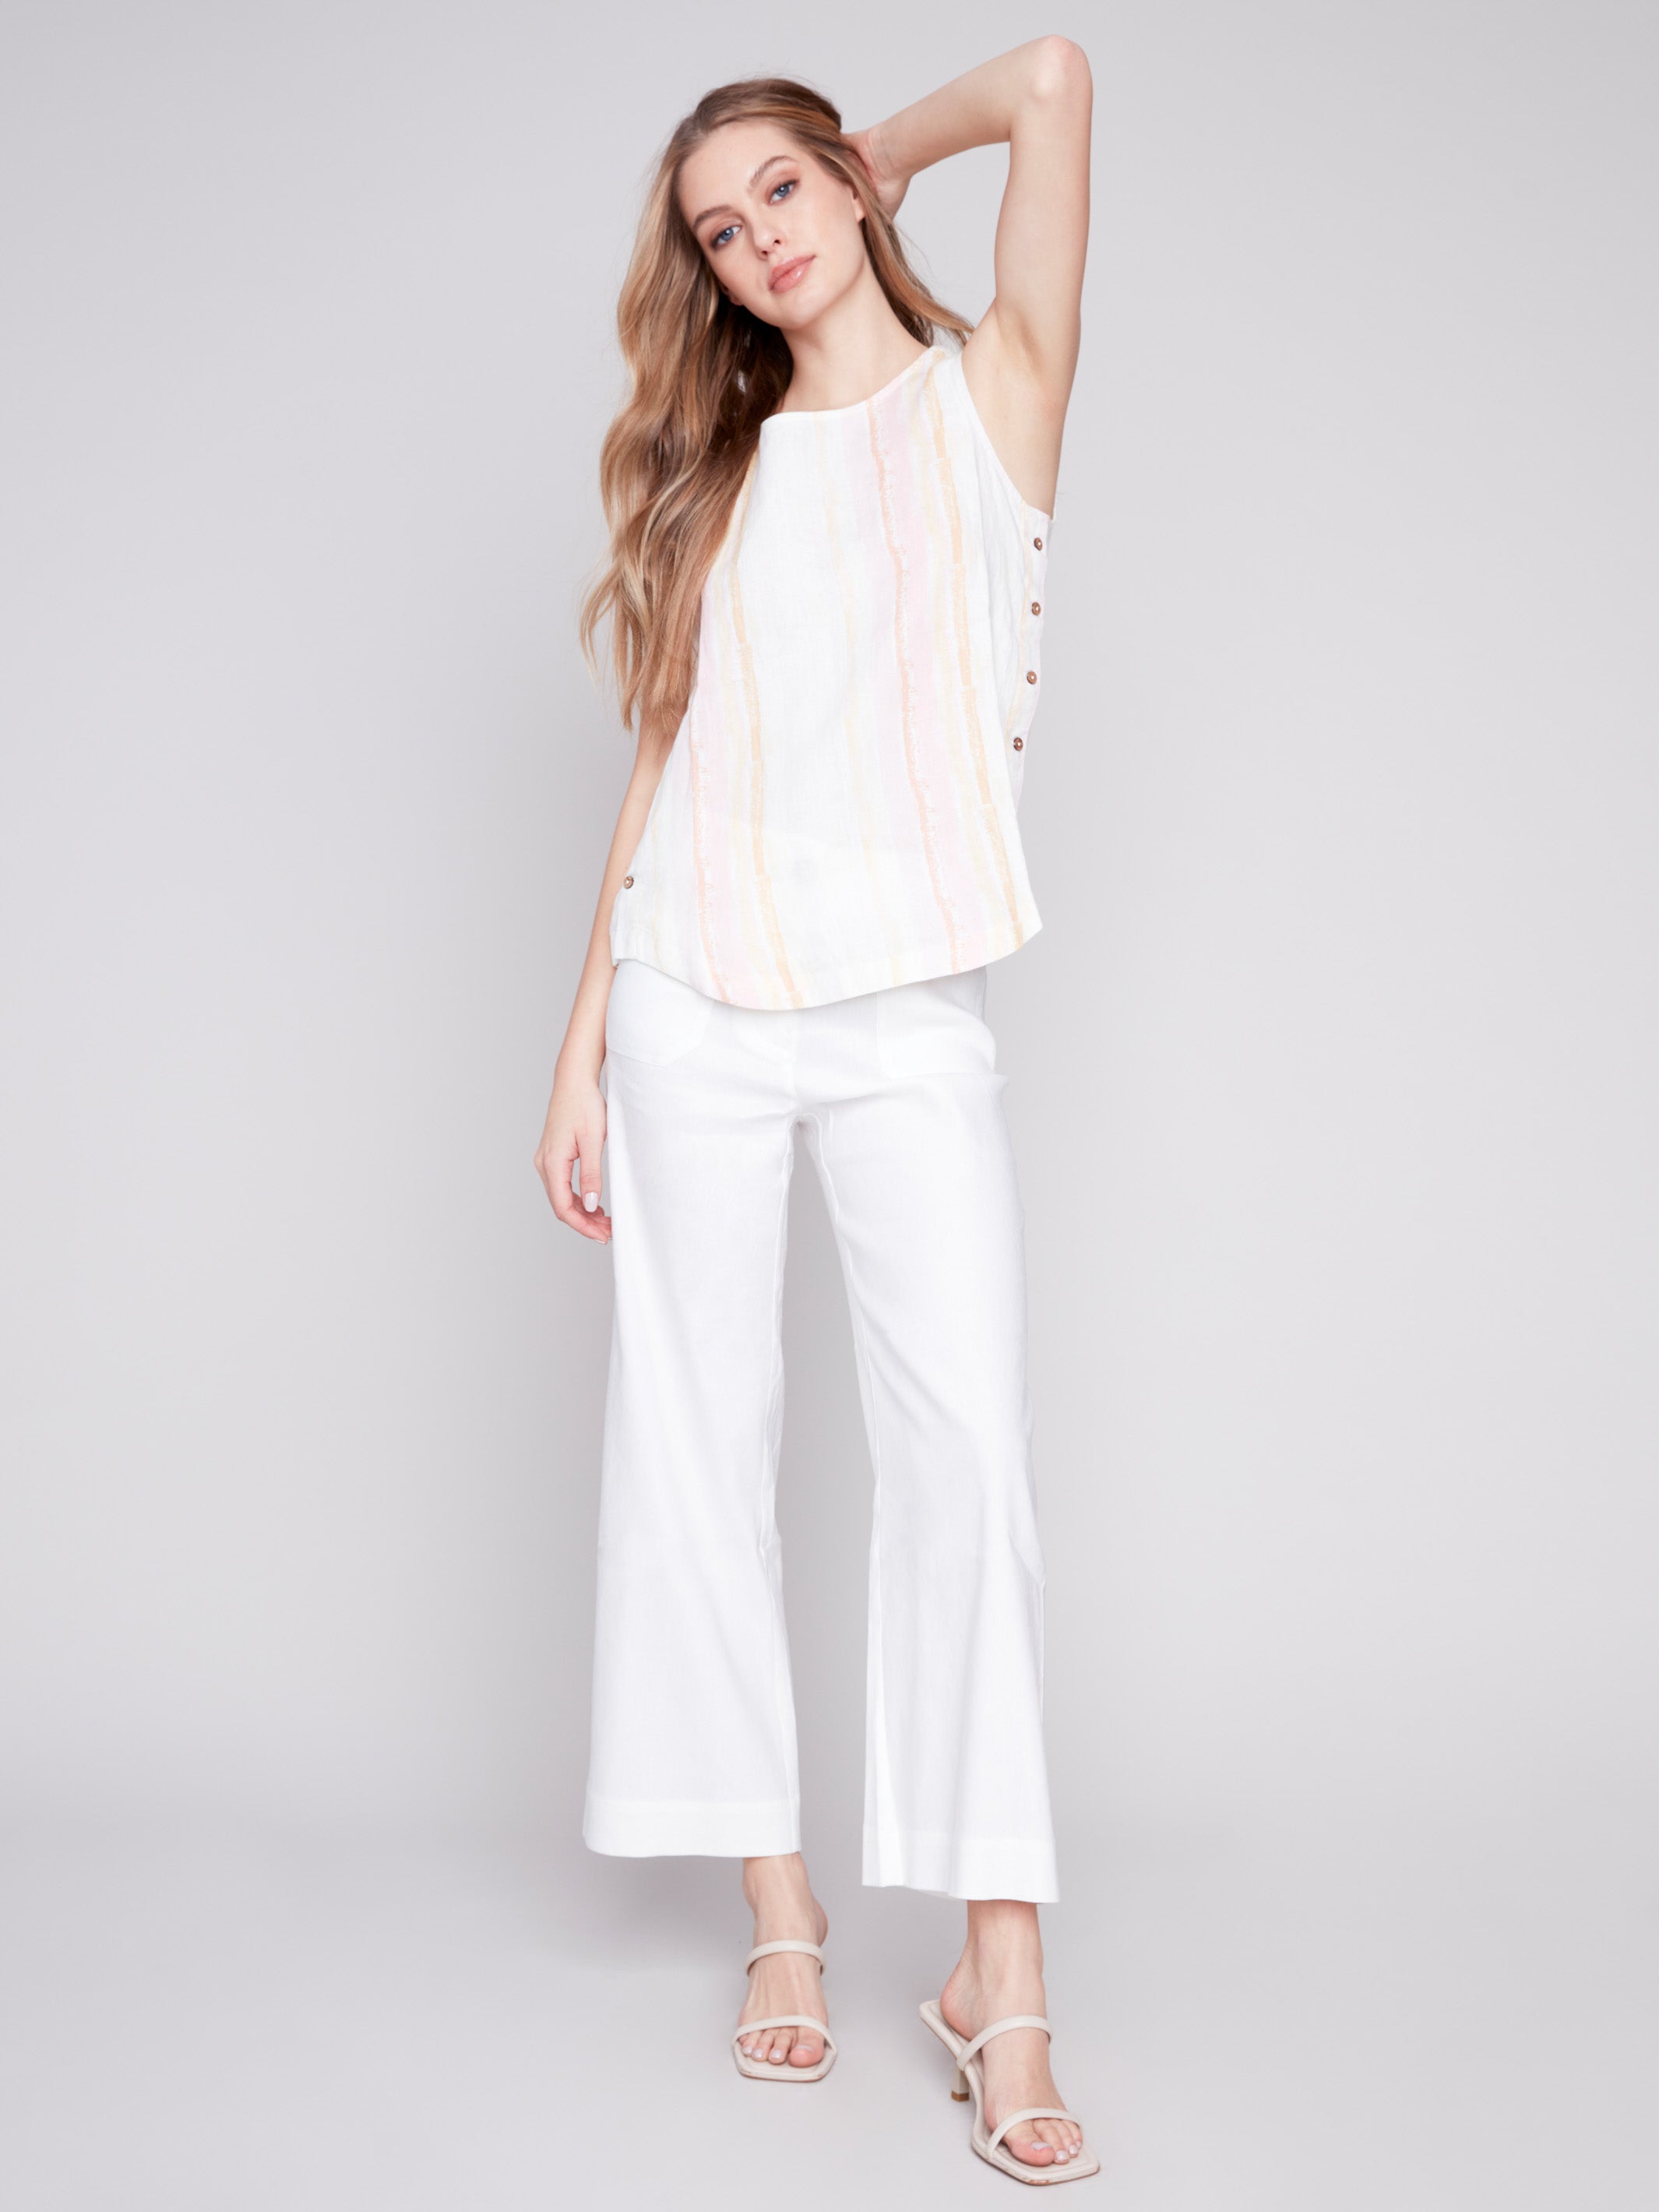 Charlie B Canada - Women's Linen Clothing - Linen Dresses, Linen Pants, Linen Jackets, Linen Shirts & Blouses